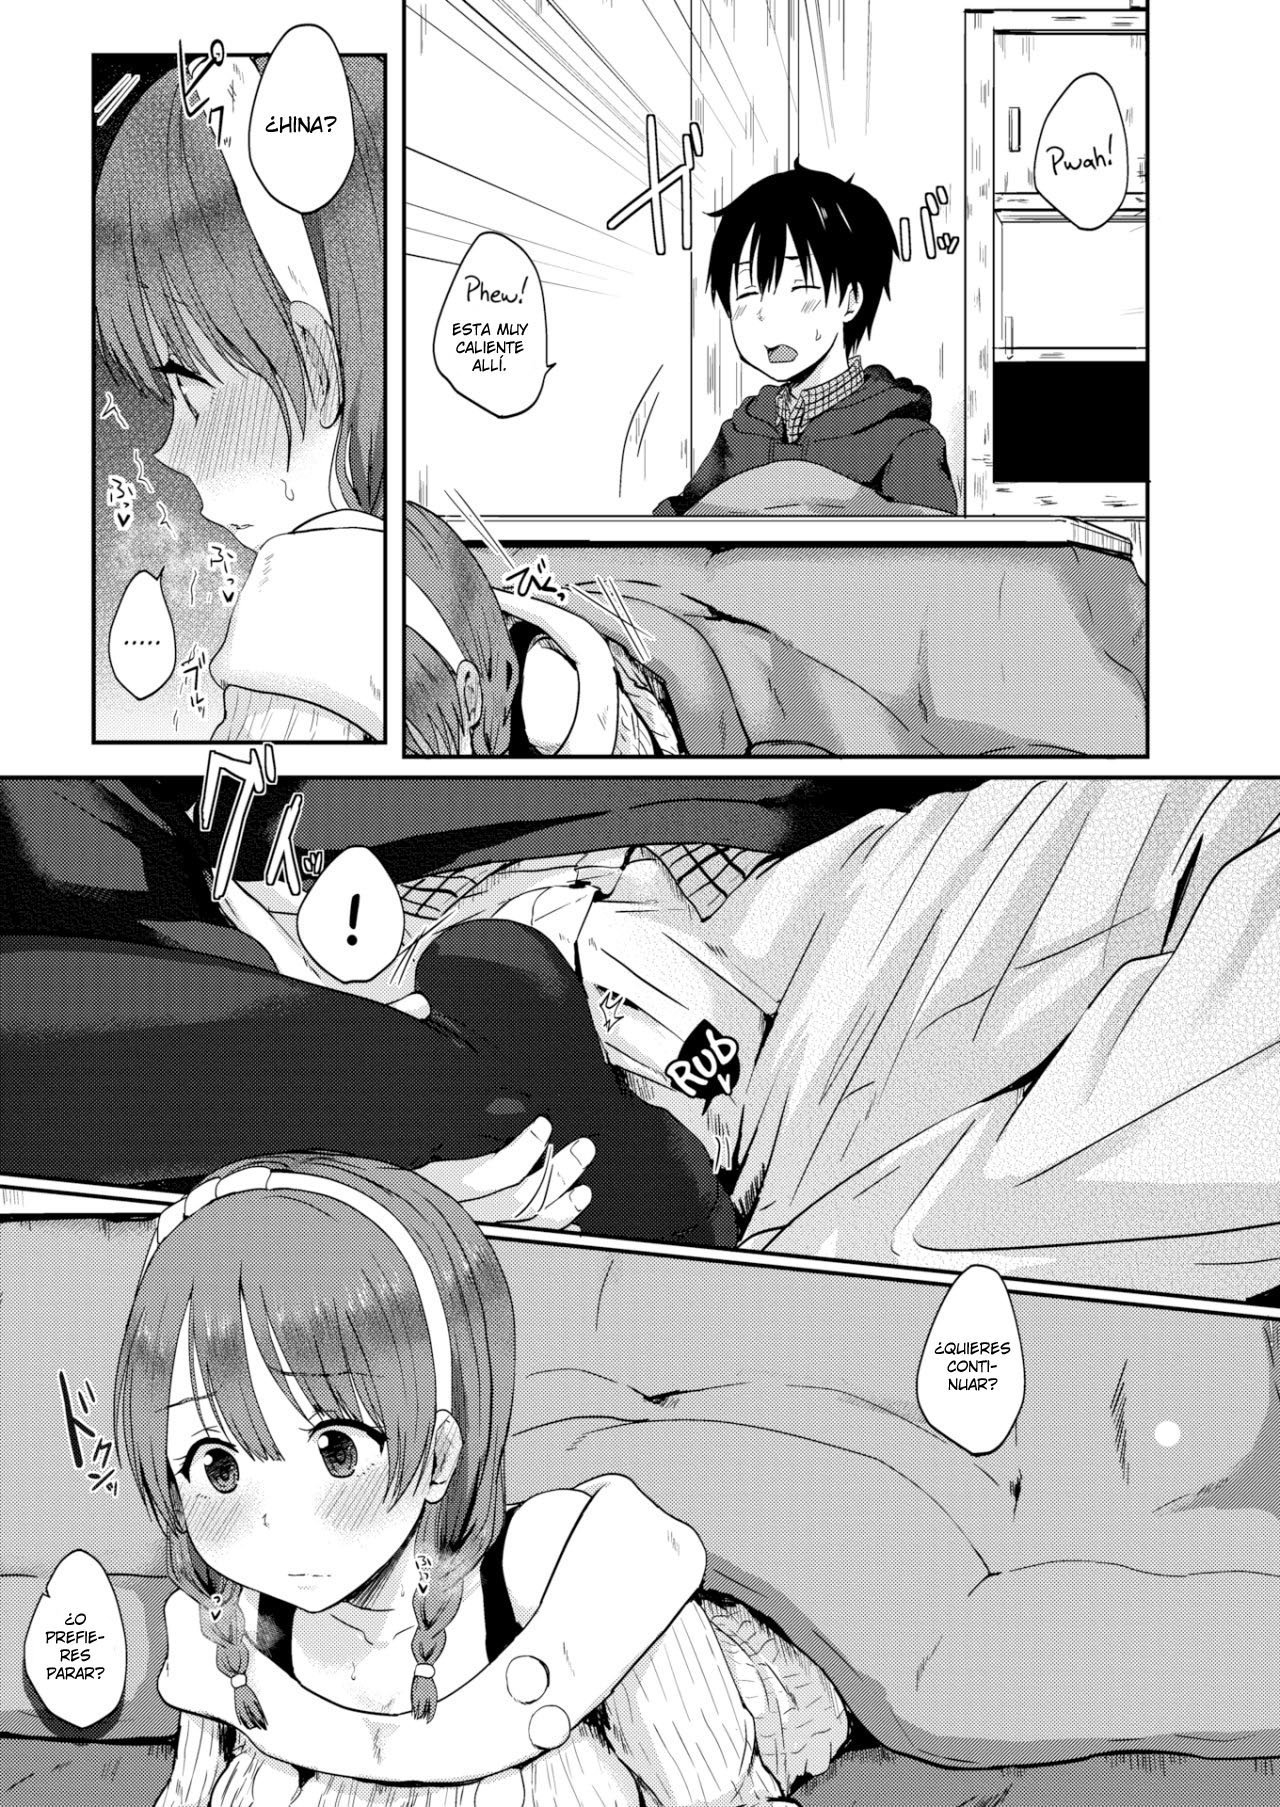 Como sacar a una caracol de su kotatsu - 5